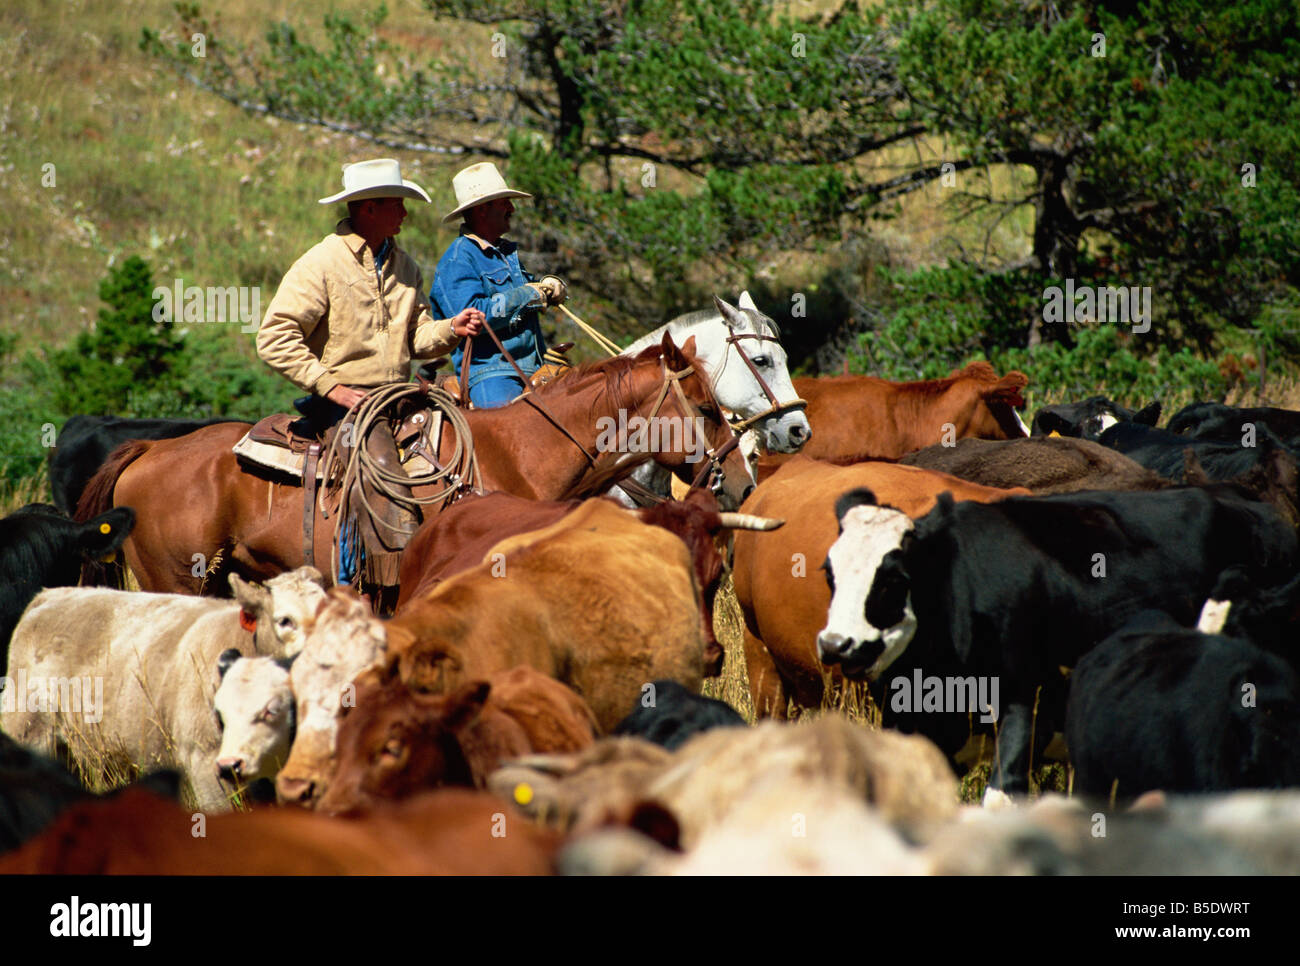 Round-up de bovins dans des pâturages, Lonesome Spur Ranch, Lonesome Spur, Montana, USA, Amérique du Nord Banque D'Images